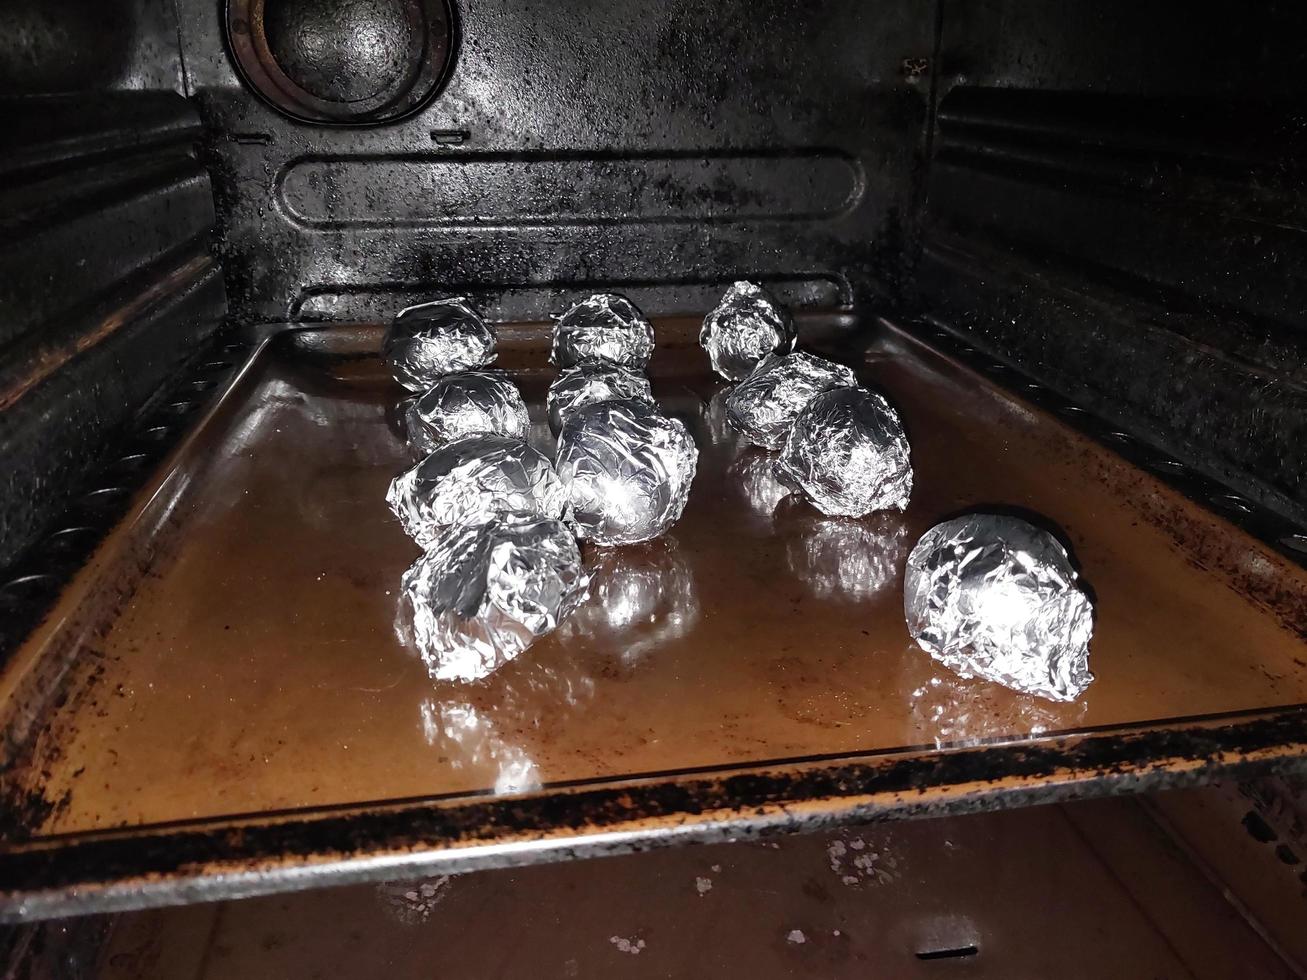 aardappelen gebakken in de keuken oven foto